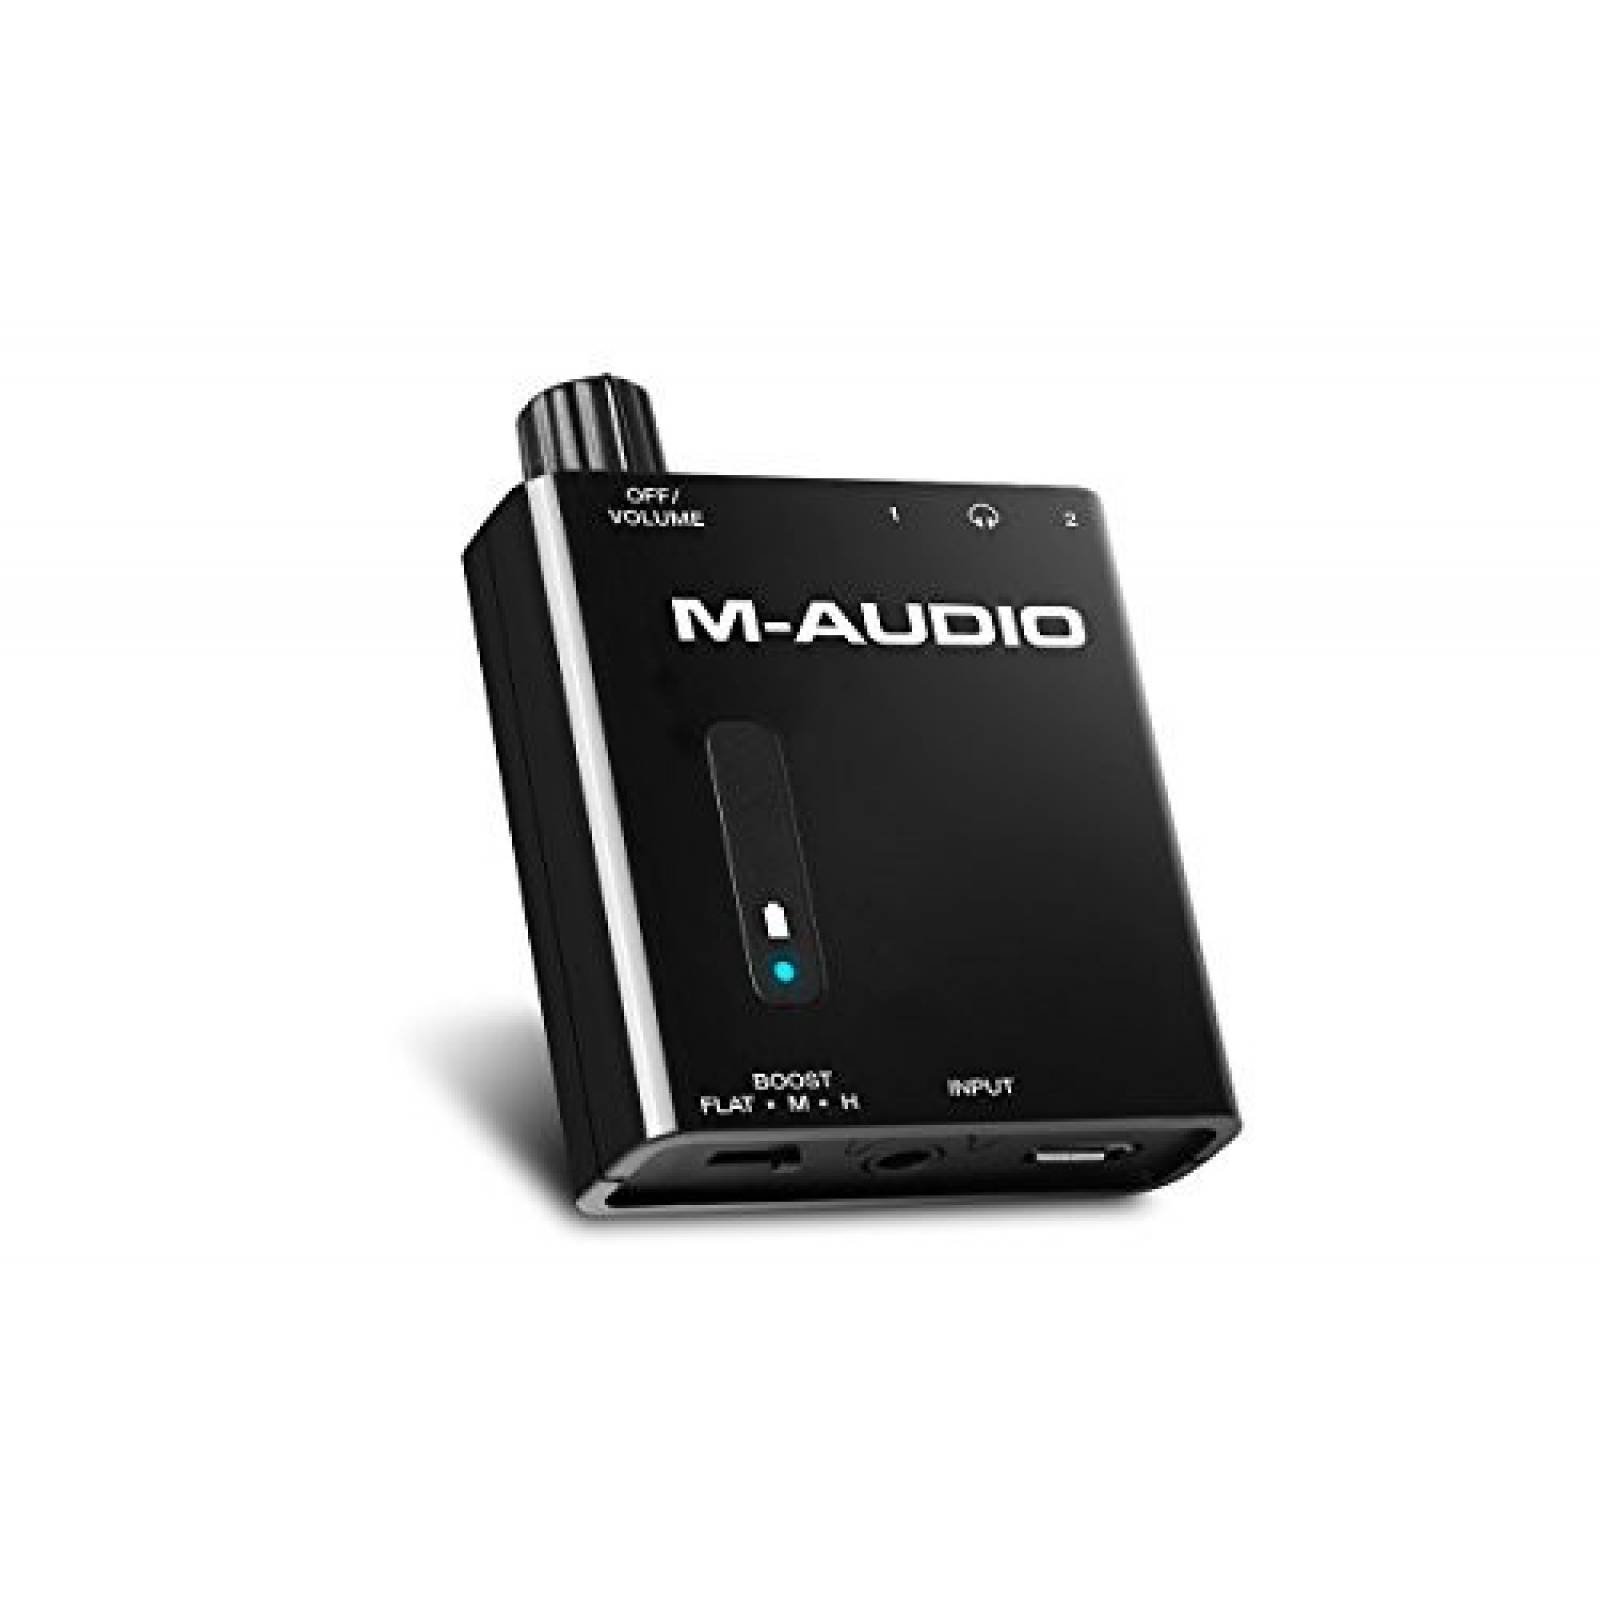 M-Audio Bass traveler. Предусилитель для наушников m Audio Bass traveler. Портативный усилитель для наушников. M-Audio Bass traveler схема.